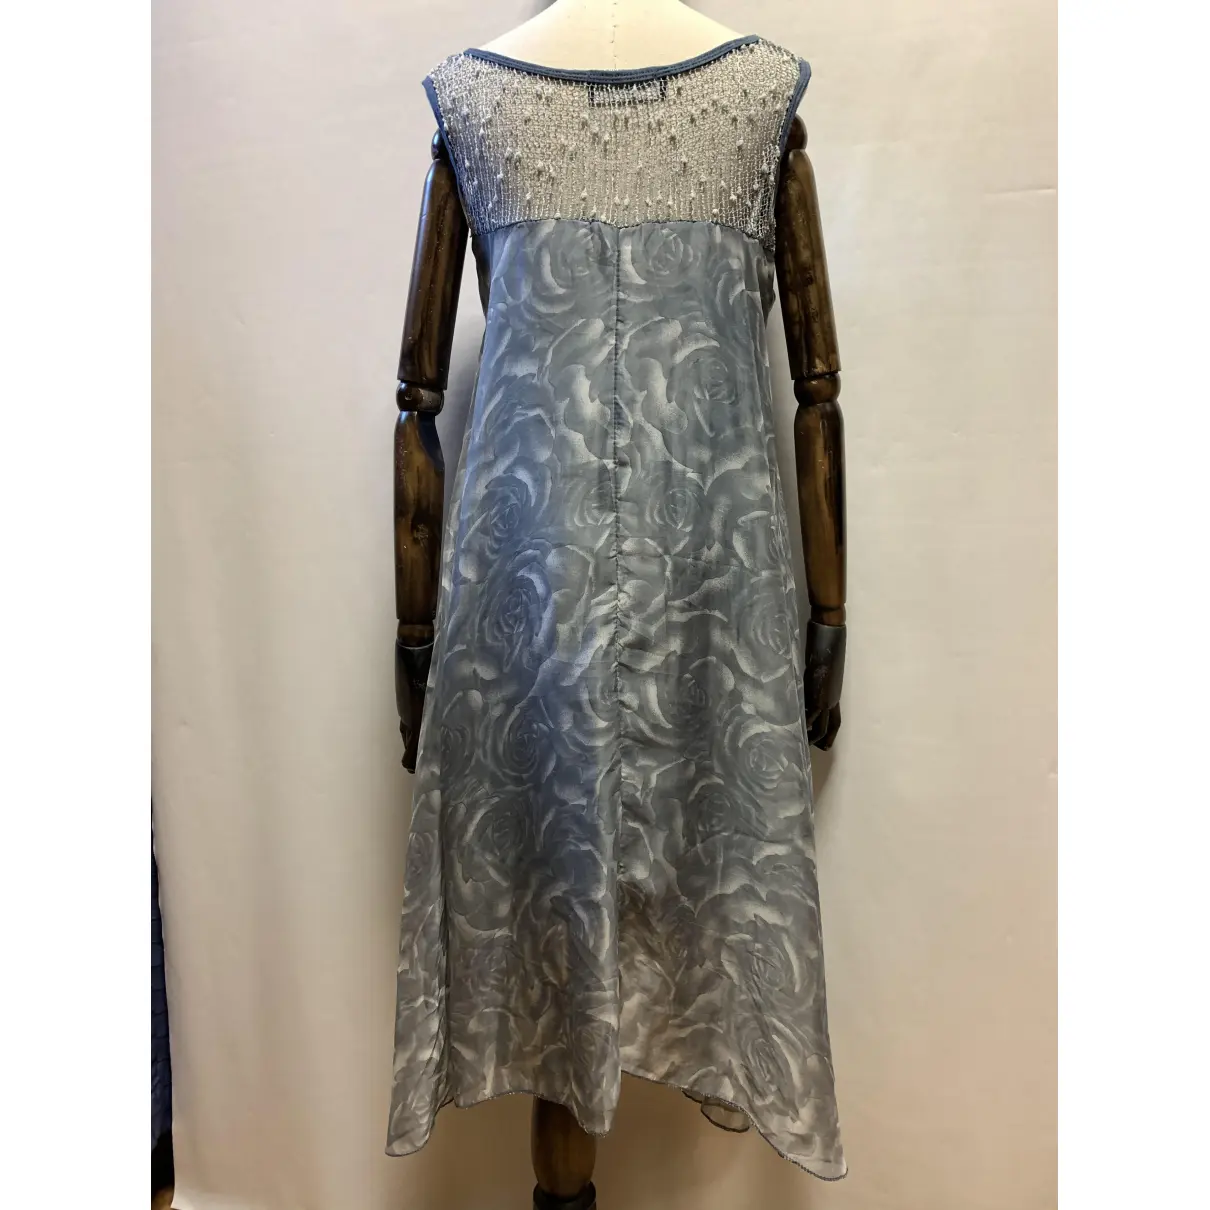 Buy Jean-Louis Scherrer Mid-length dress online - Vintage